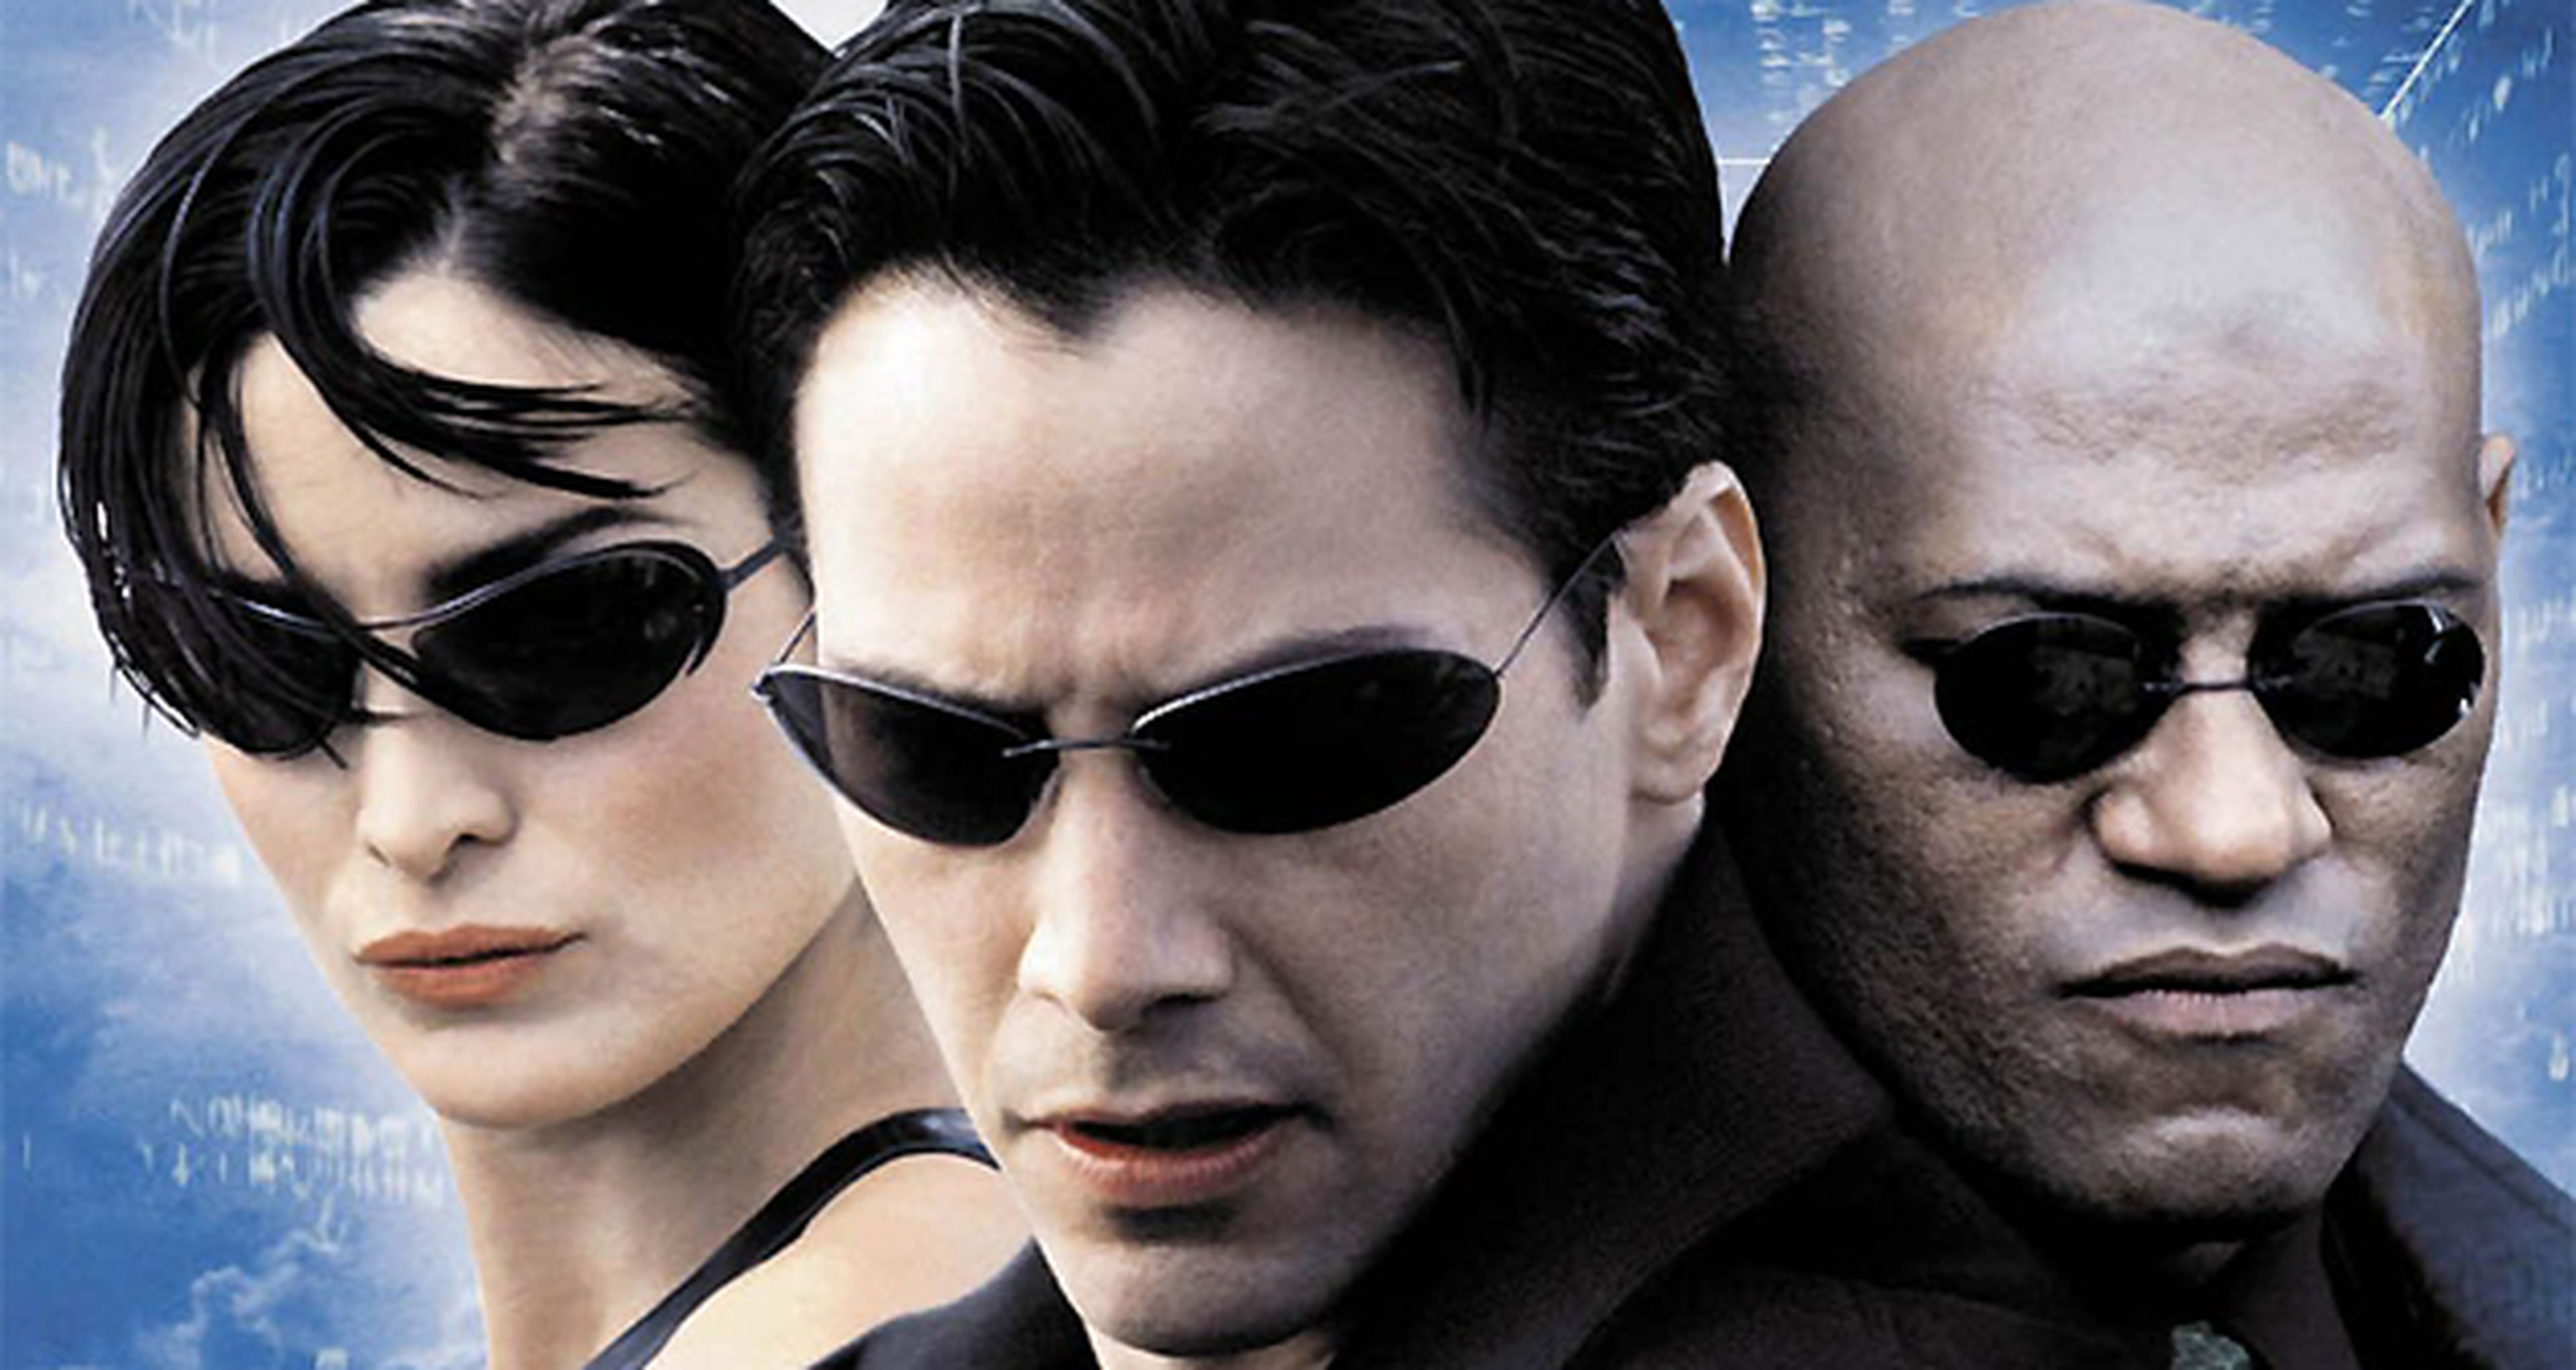 Cine de ciencia ficción: crítica de Matrix